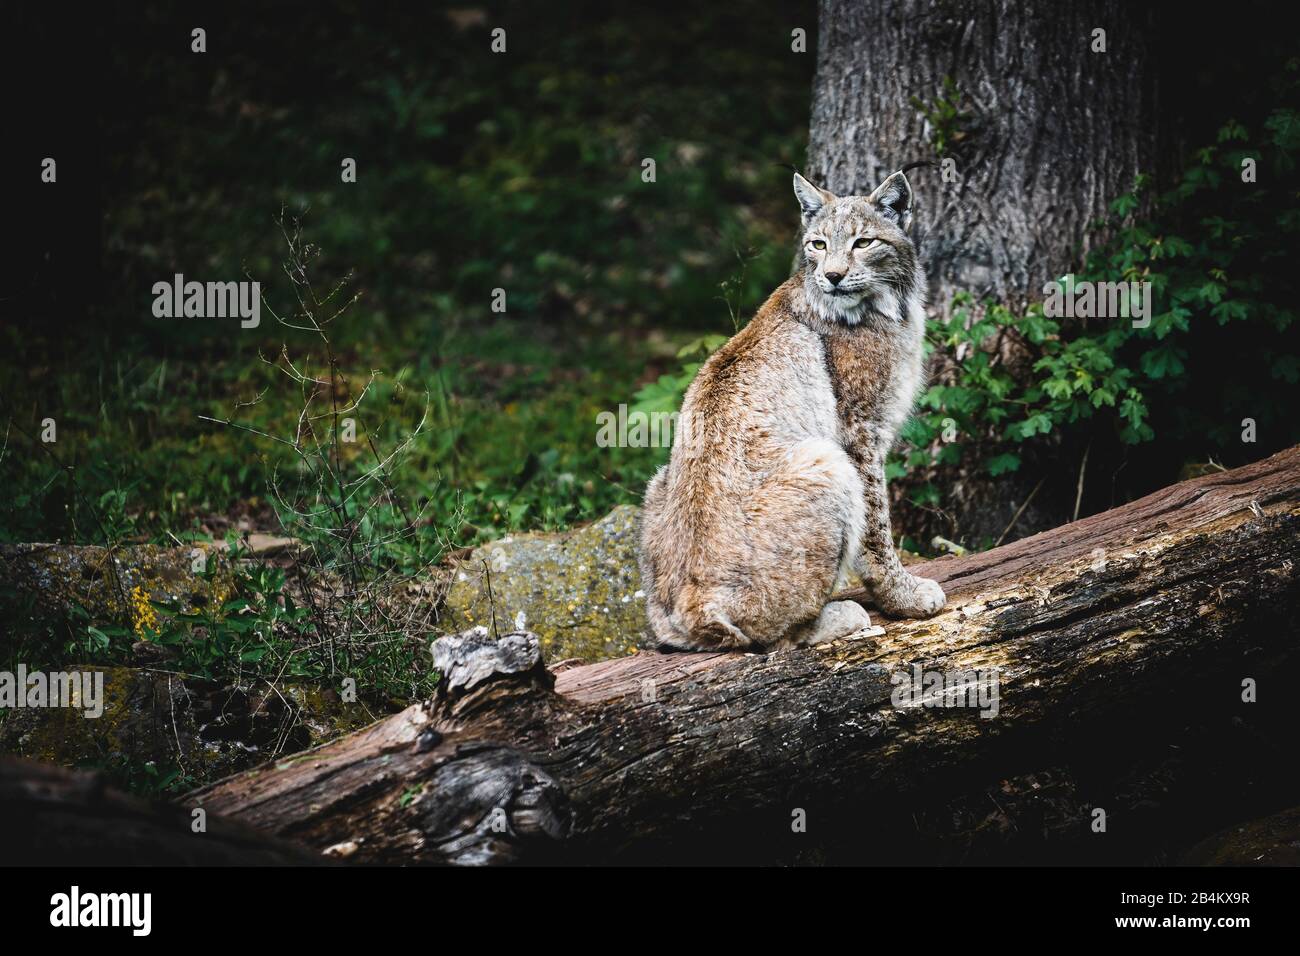 Lynx, Lynx, Felidae, se sienta sobre un tronco de árbol viejo Foto de stock